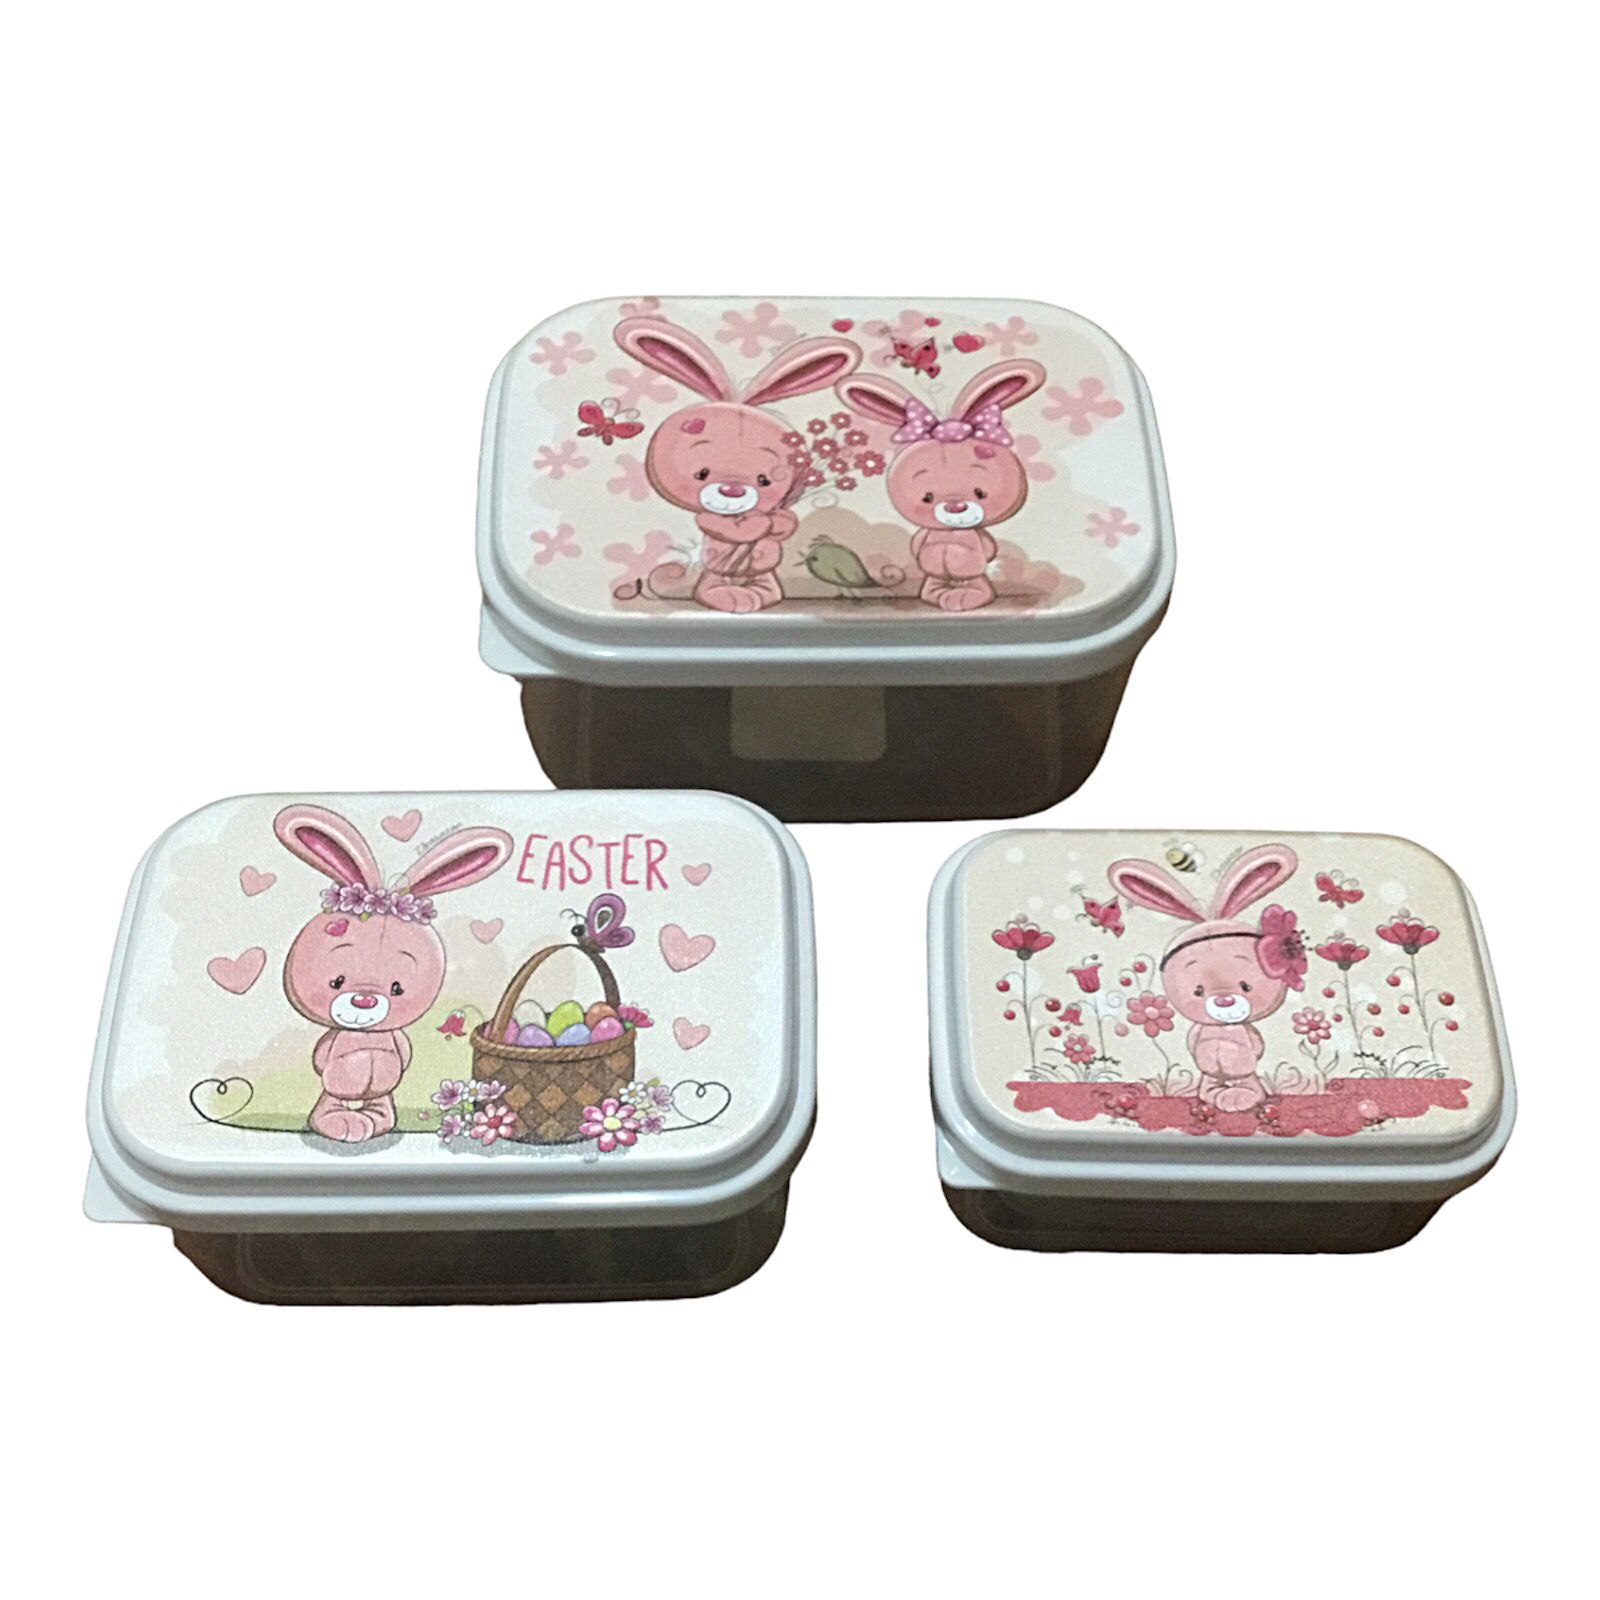 ظرف غذای کودک طرح خرگوش کد w3 مجموعه 3 عددی -  - 1